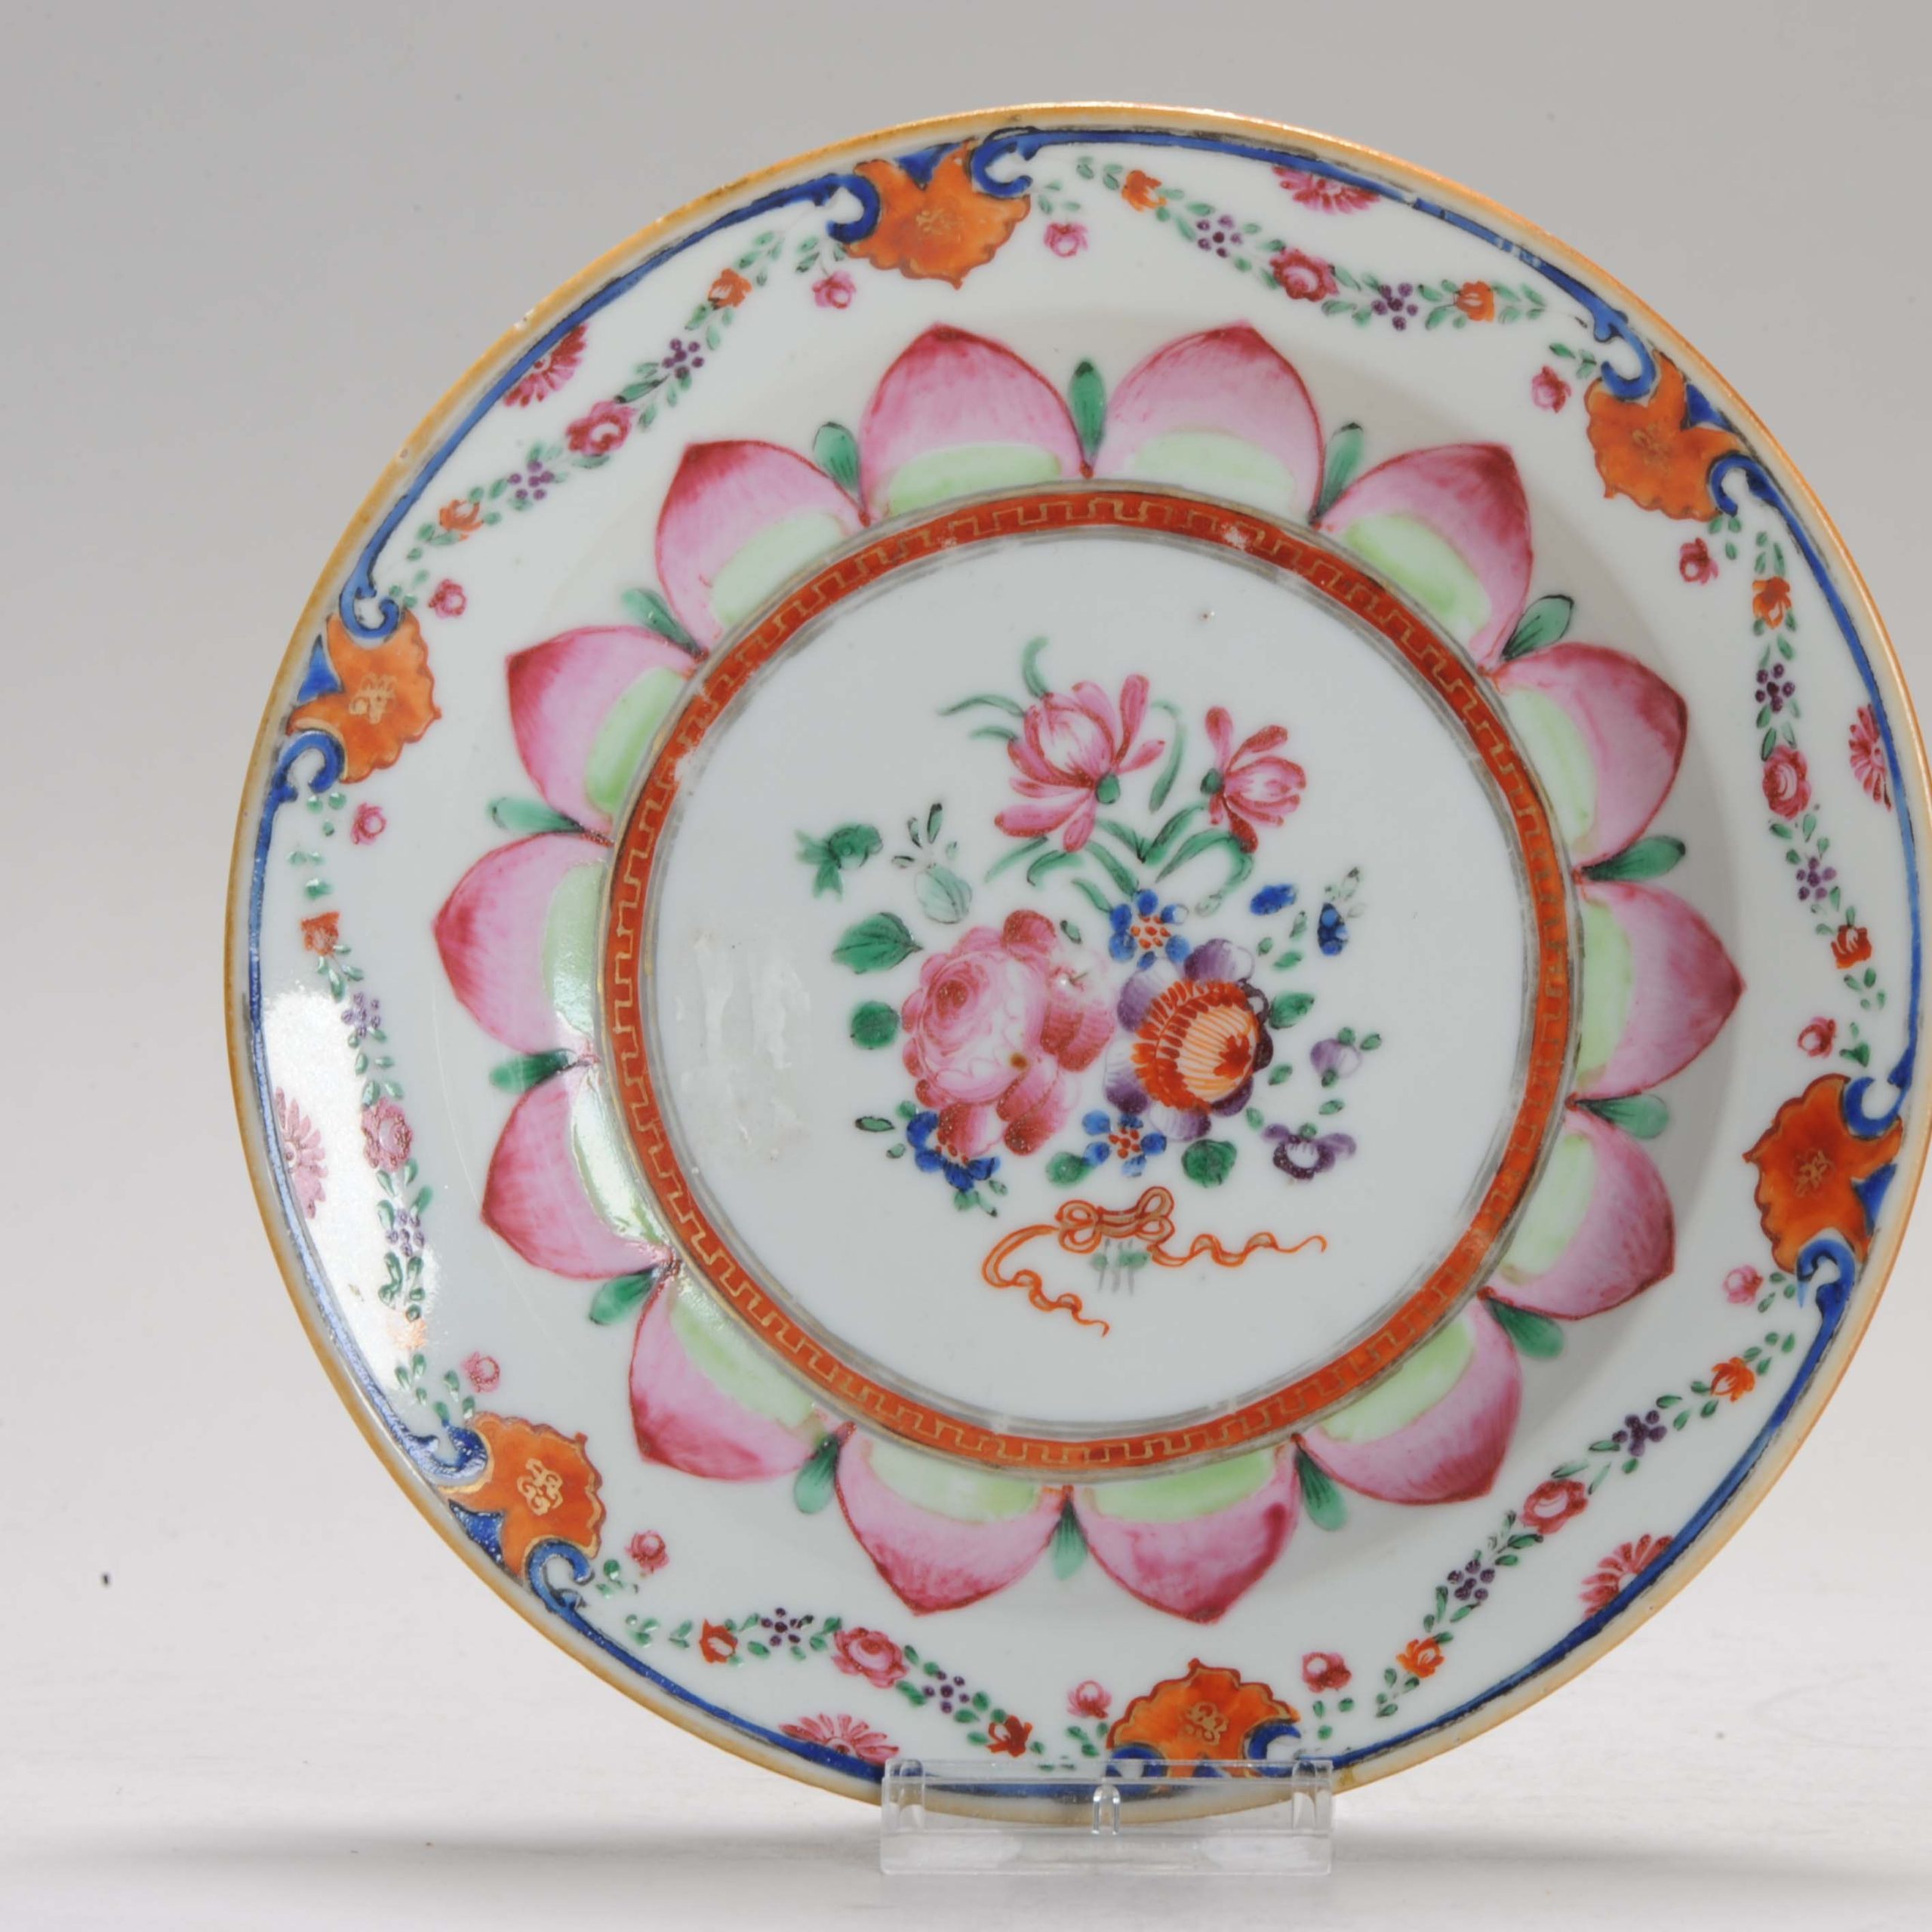 1182 High Quality Famille Rose plate. Flowers & Gildings. Lovely design. SE Asian Market